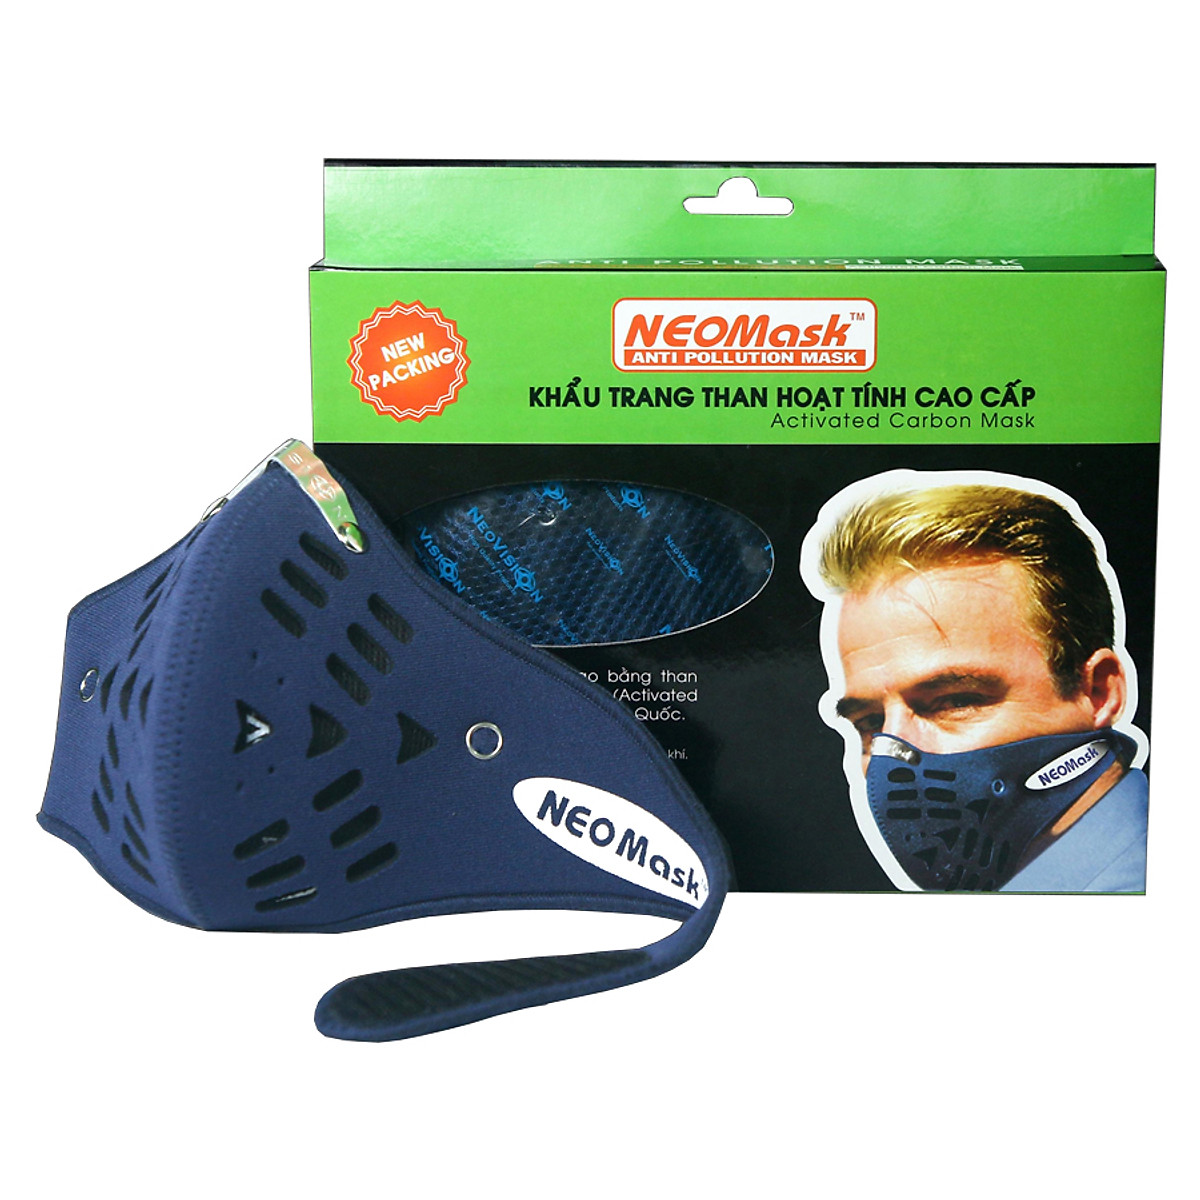 Mua Khẩu Trang Than Hoạt Tính Cao Cấp NeoMask Anti Pollution Mask NM (Dùng  được 06 tháng) tại Công ty Dụng cụ & Hóa chất Khai Vũ